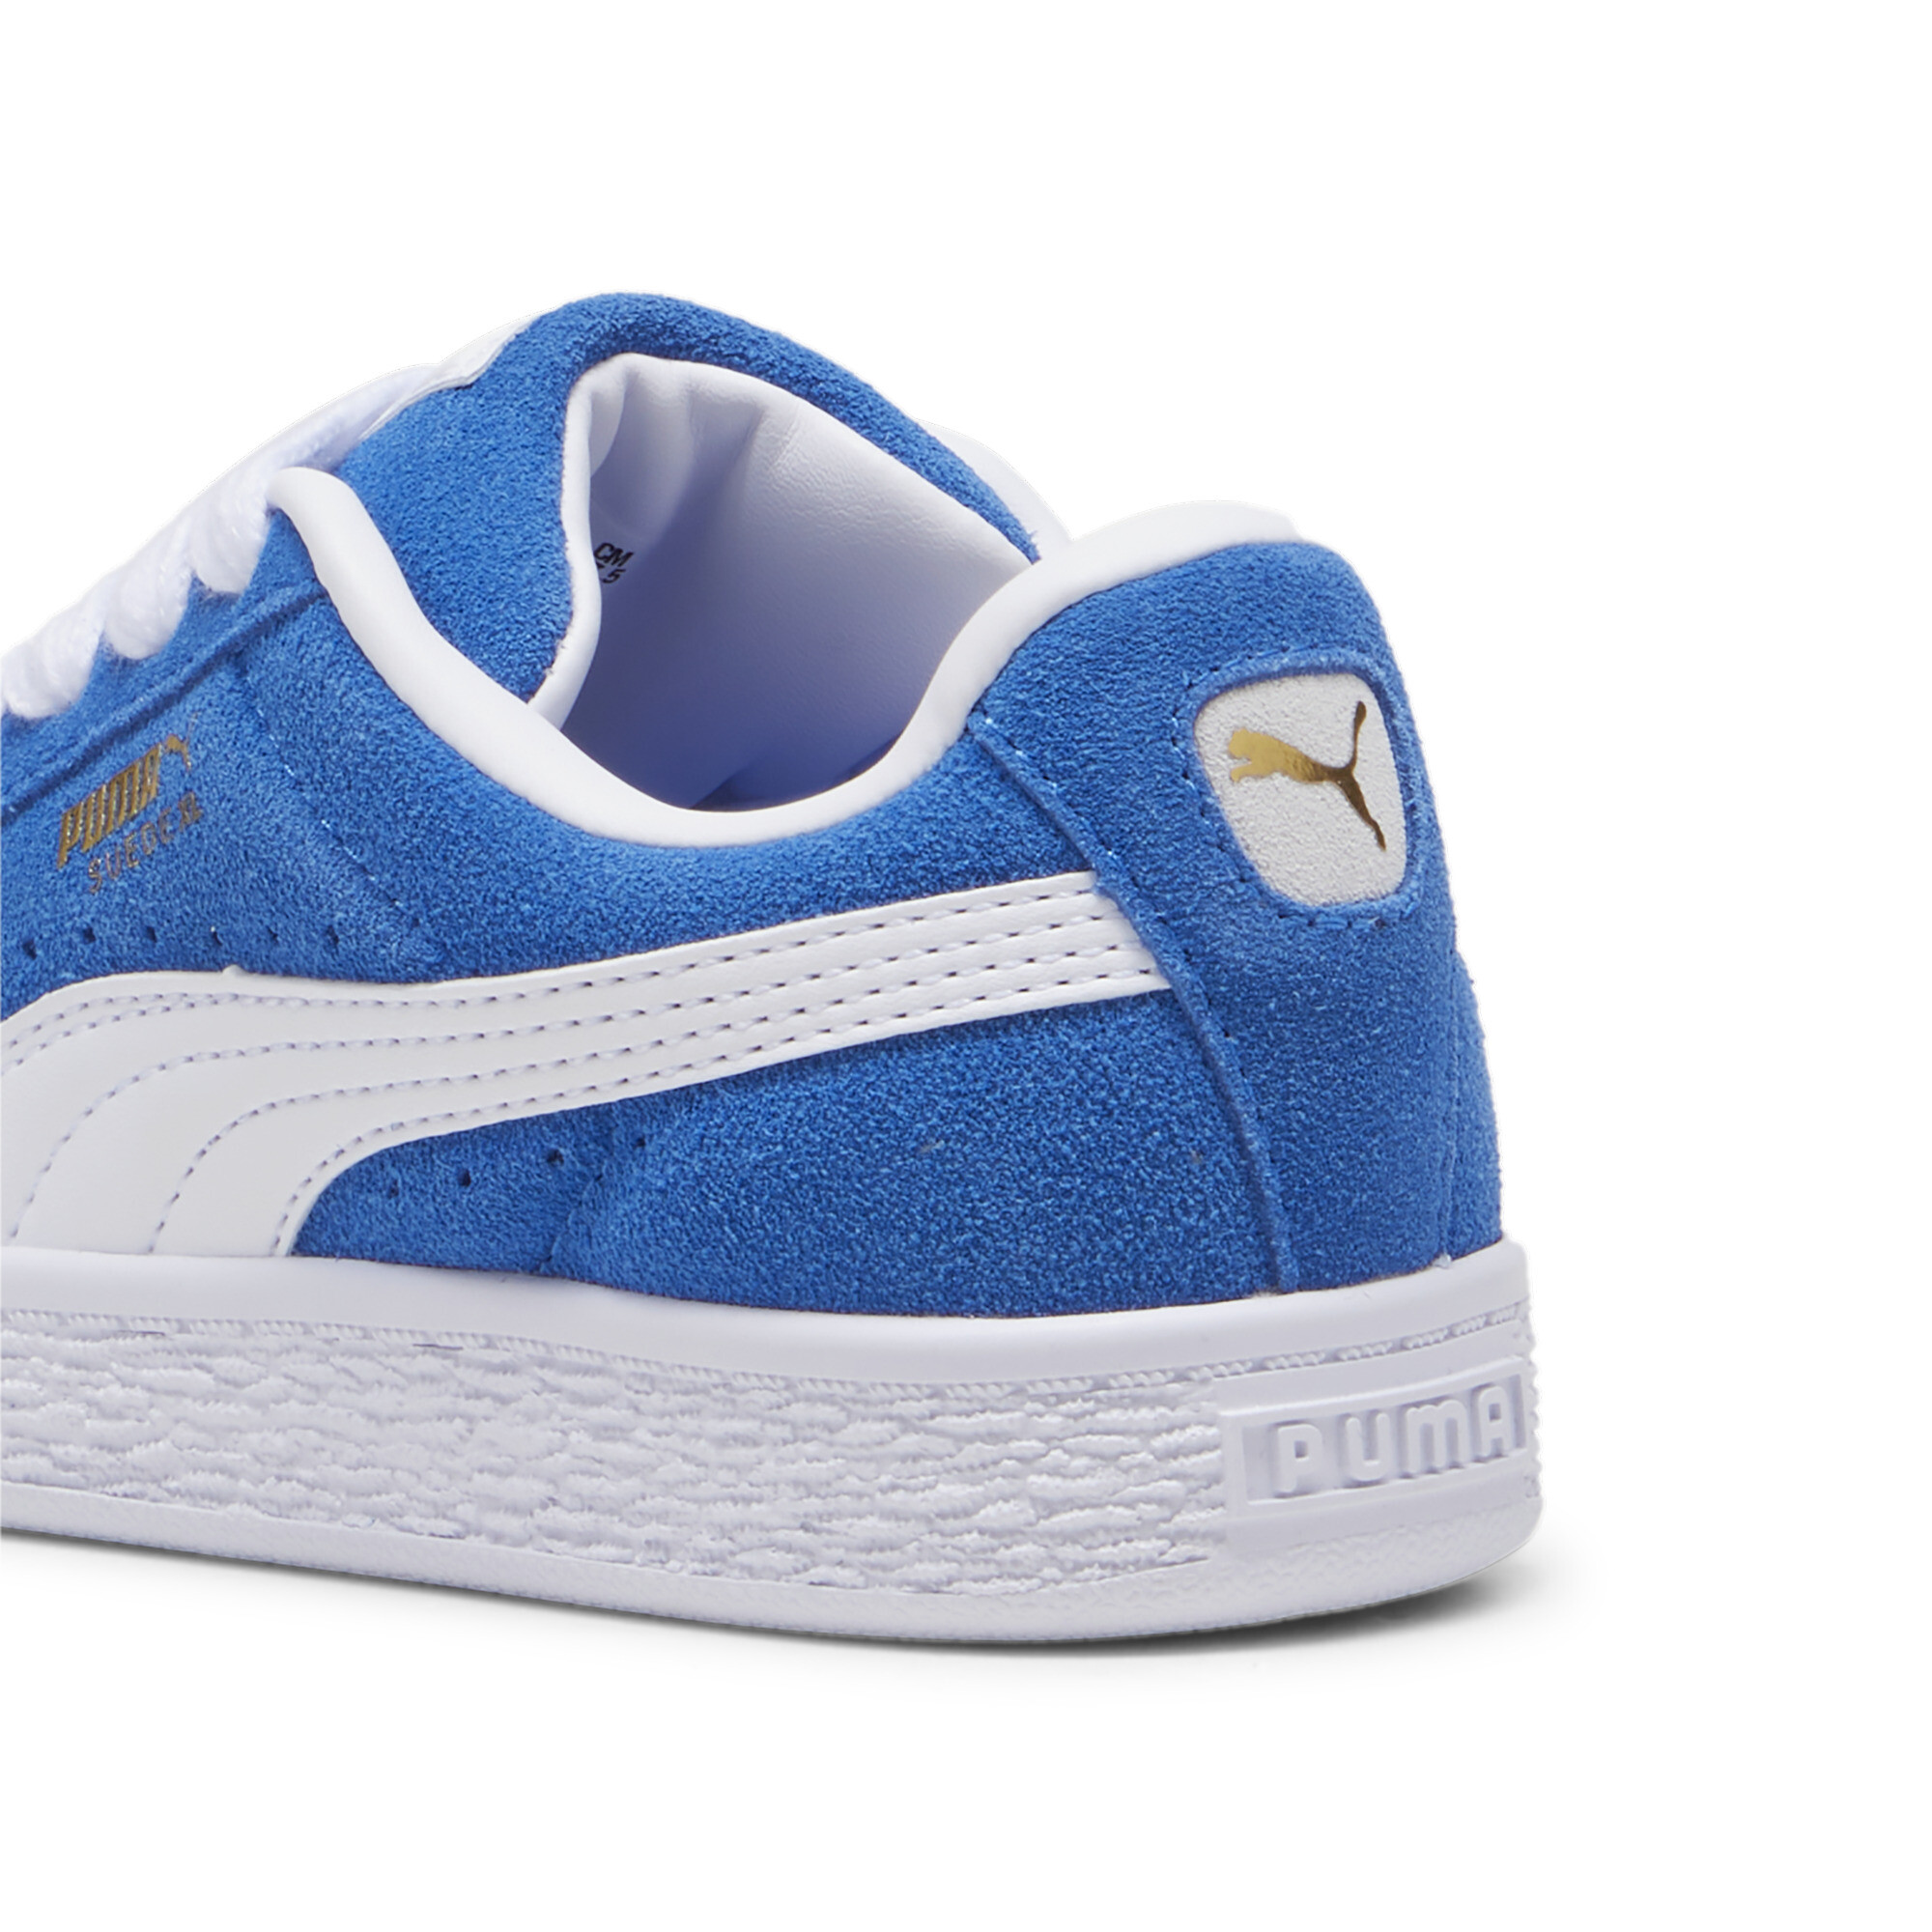 Kids' PUMA Suede XL Sneakers In 80 - Blue, Size EU 31